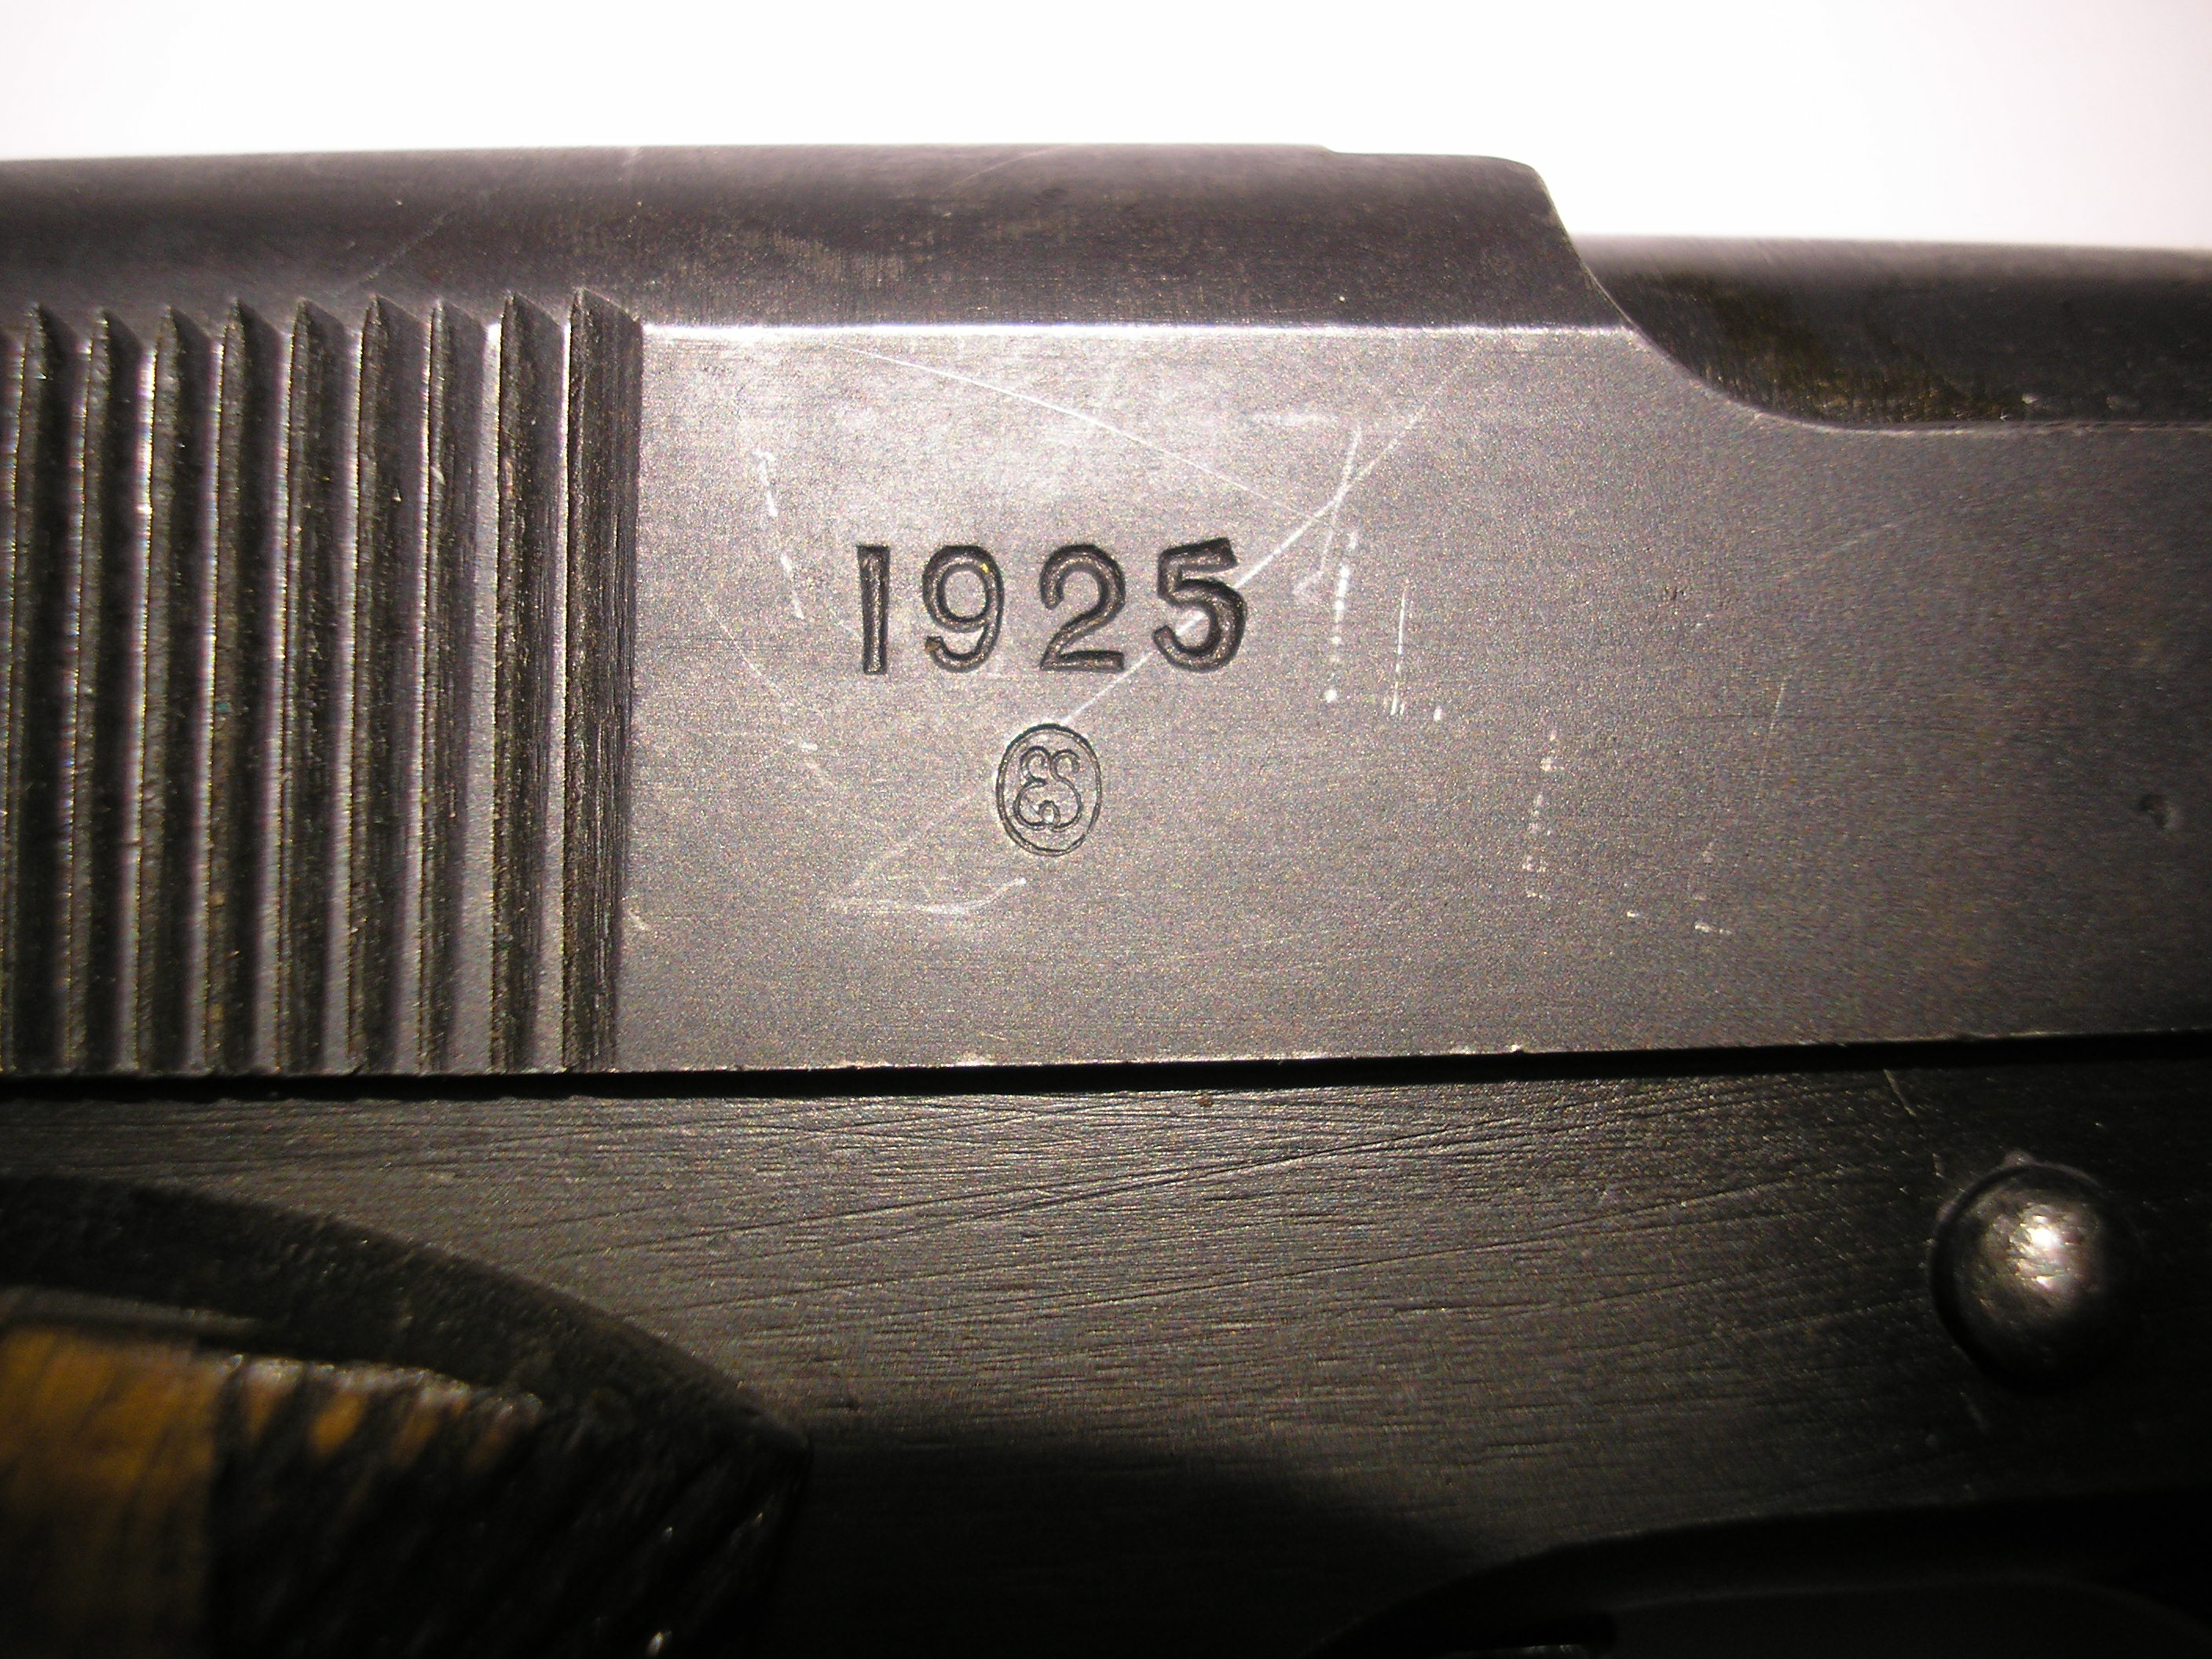 ./guns/pistol/bilder/Pistol-Kongsberg-M1914-1925-6755-3.JPG